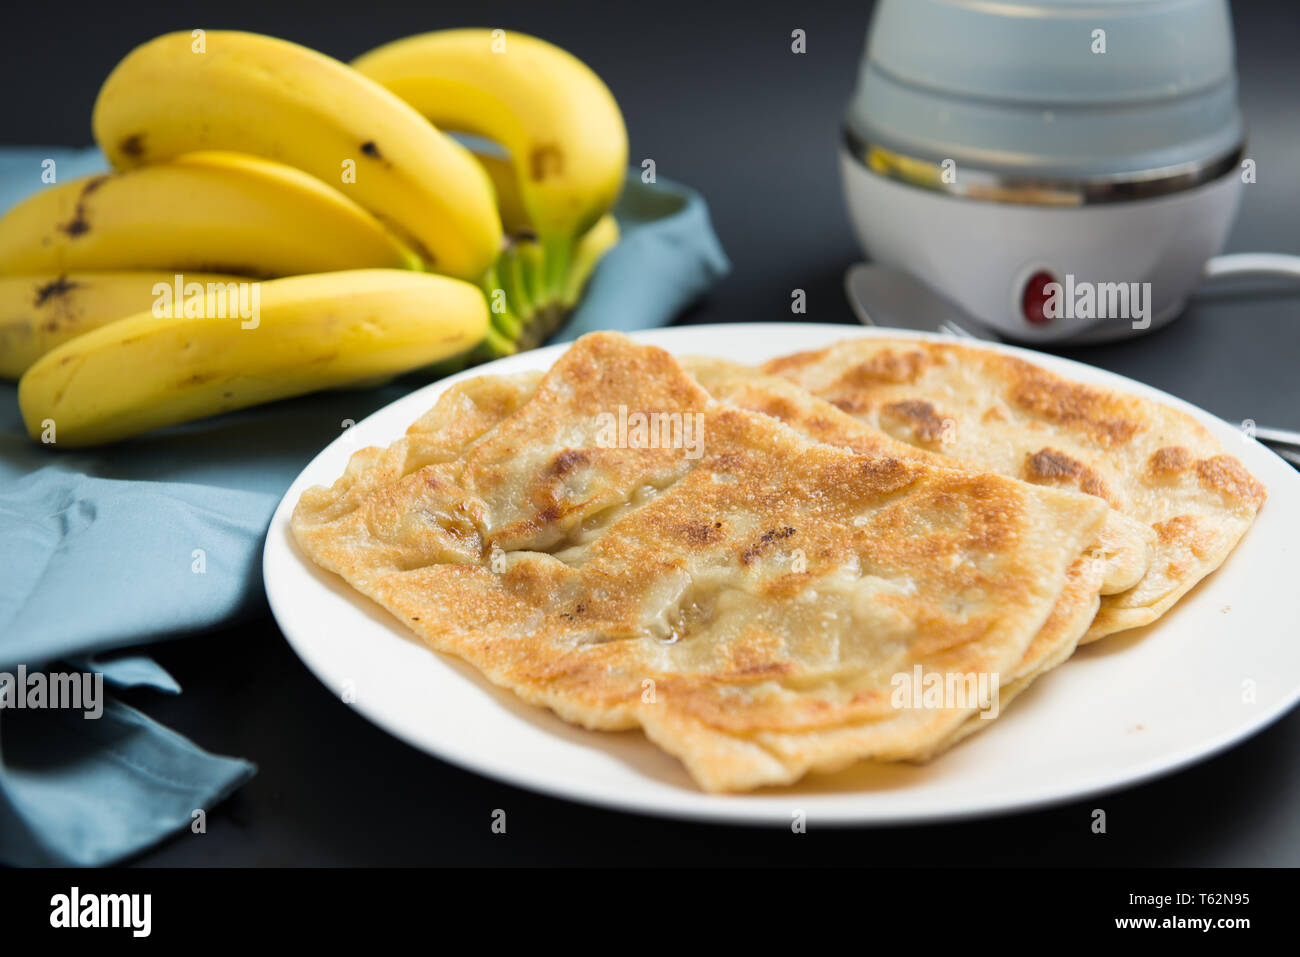 Indian breakfast banana paratha or pancake Stock Photo